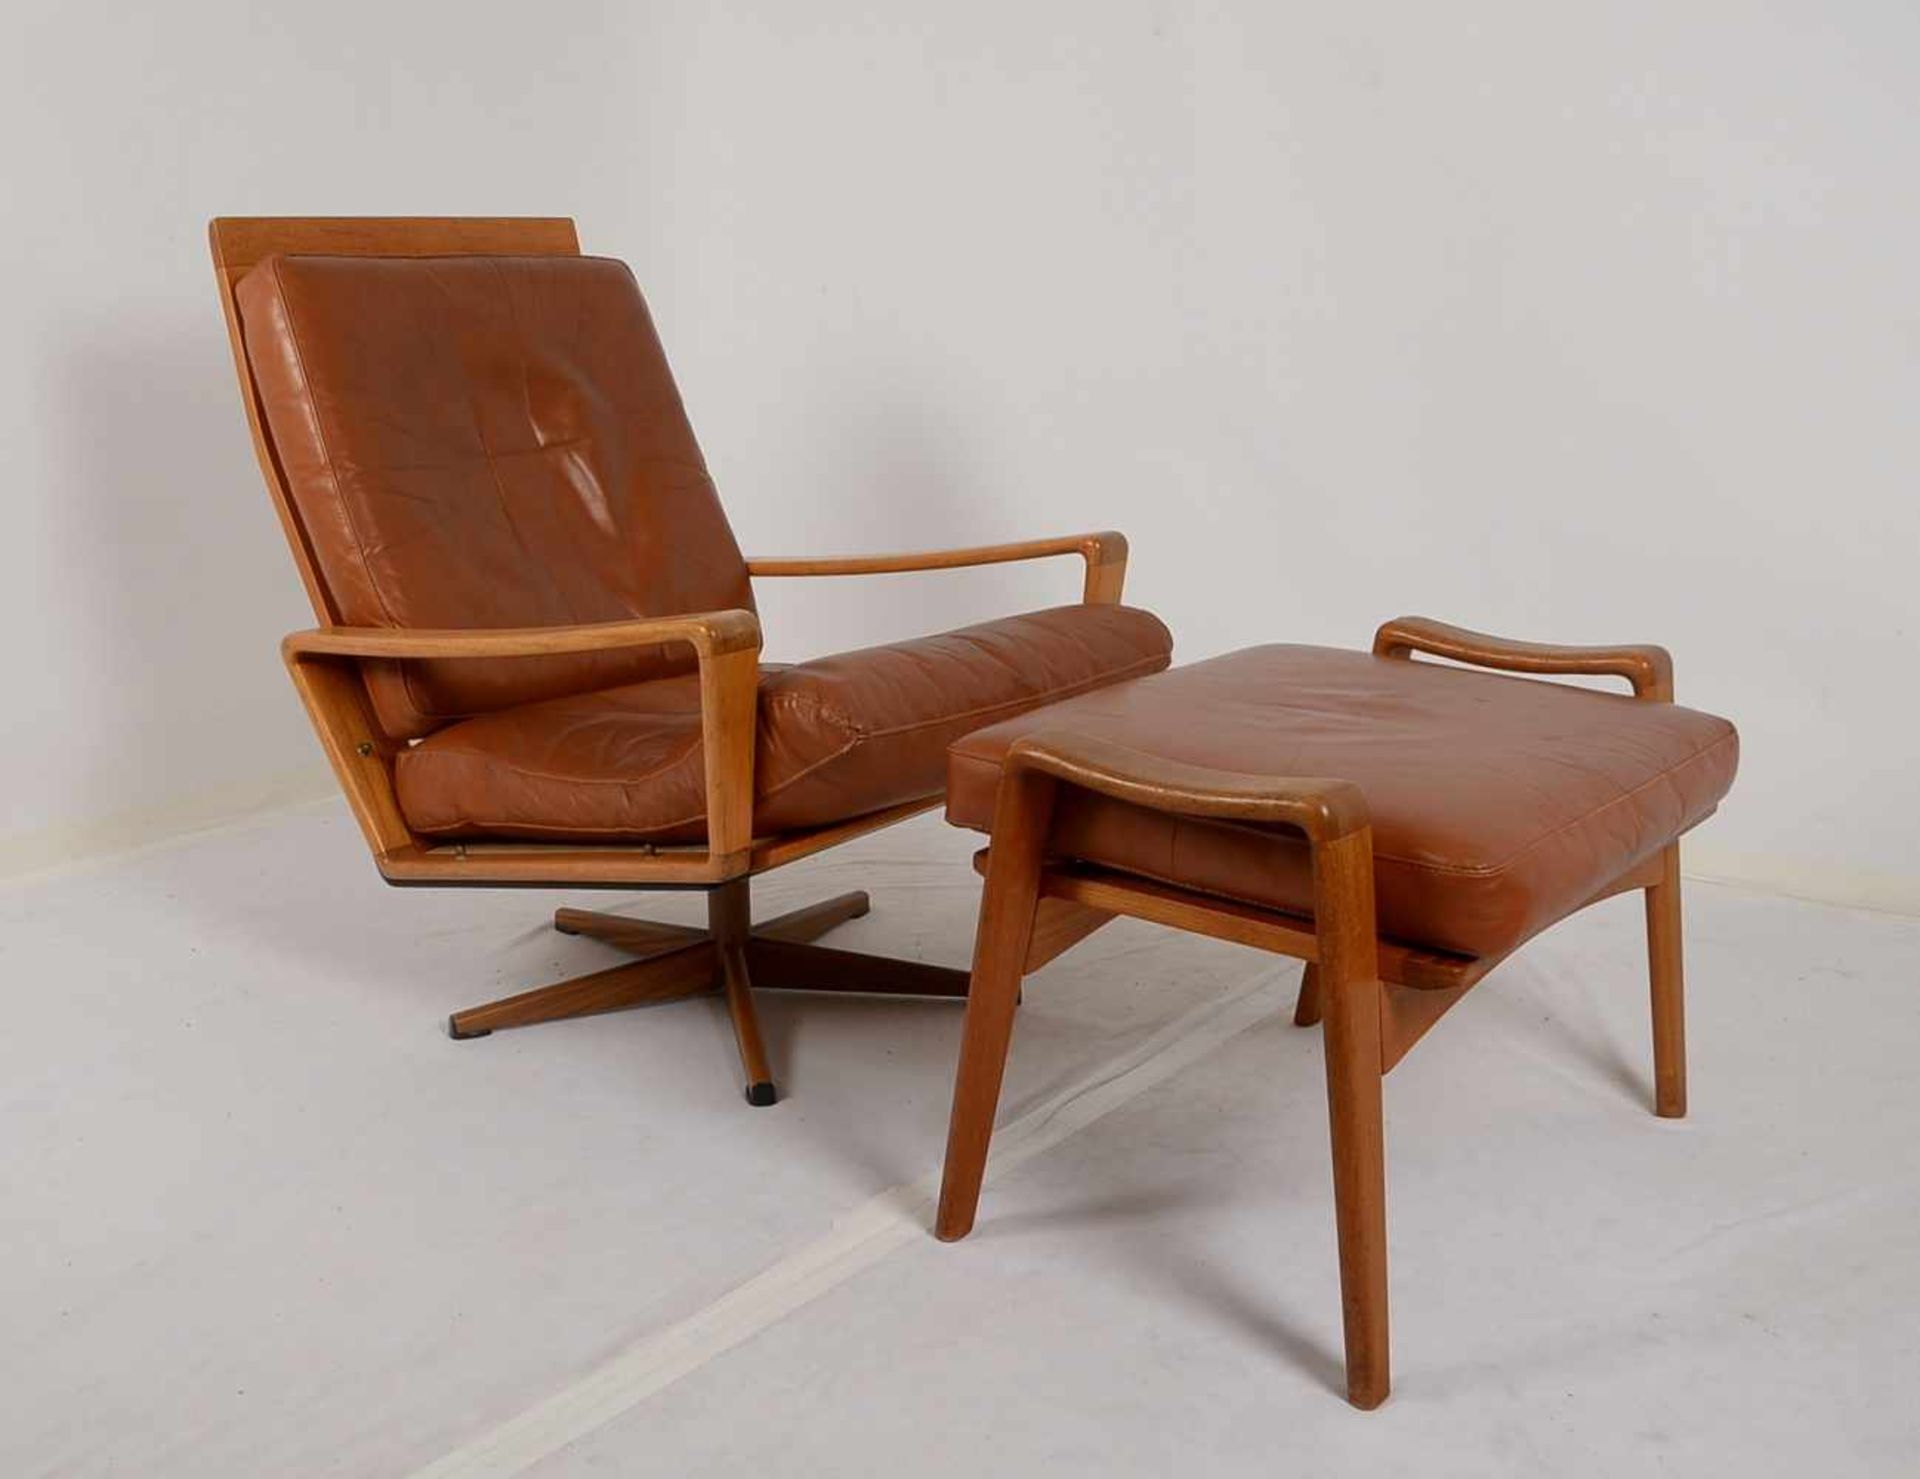 Komfort/Dänemark, Sessel mit Fußhocker, Teakholz und cognacbraunes Leder, 'Made in Denmark', - Bild 2 aus 2